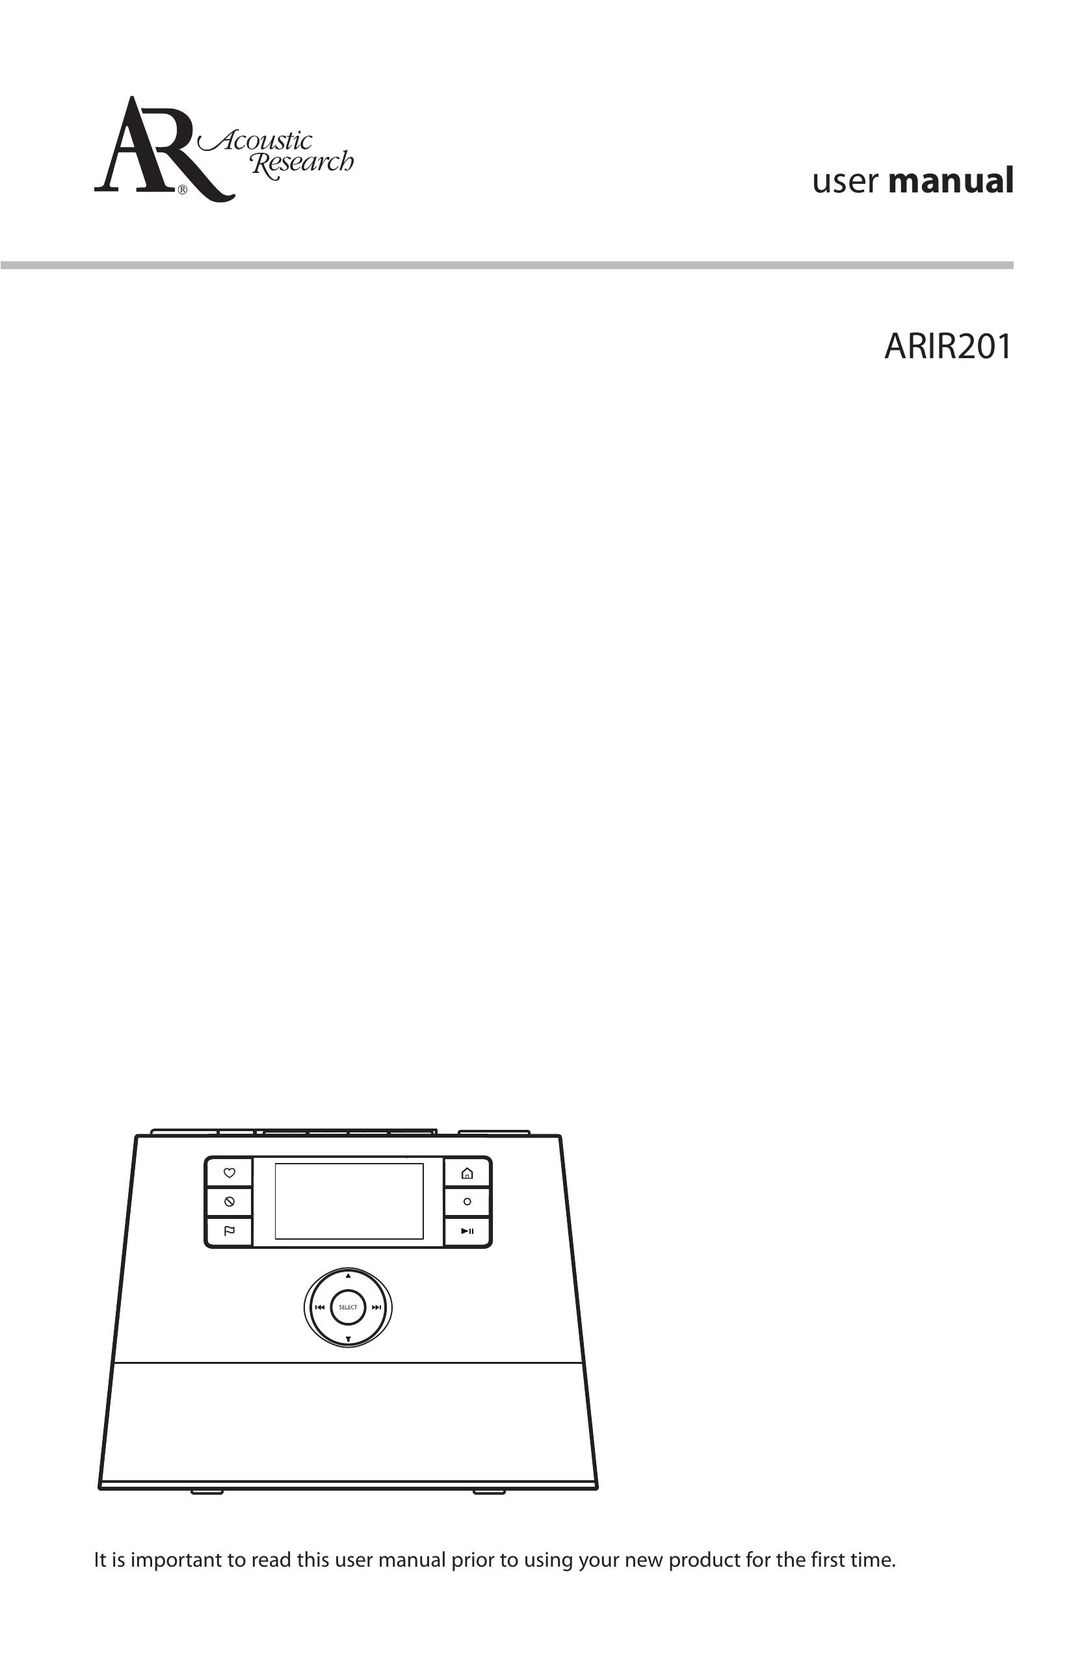 Acoustic Research ARIR201 Radio User Manual